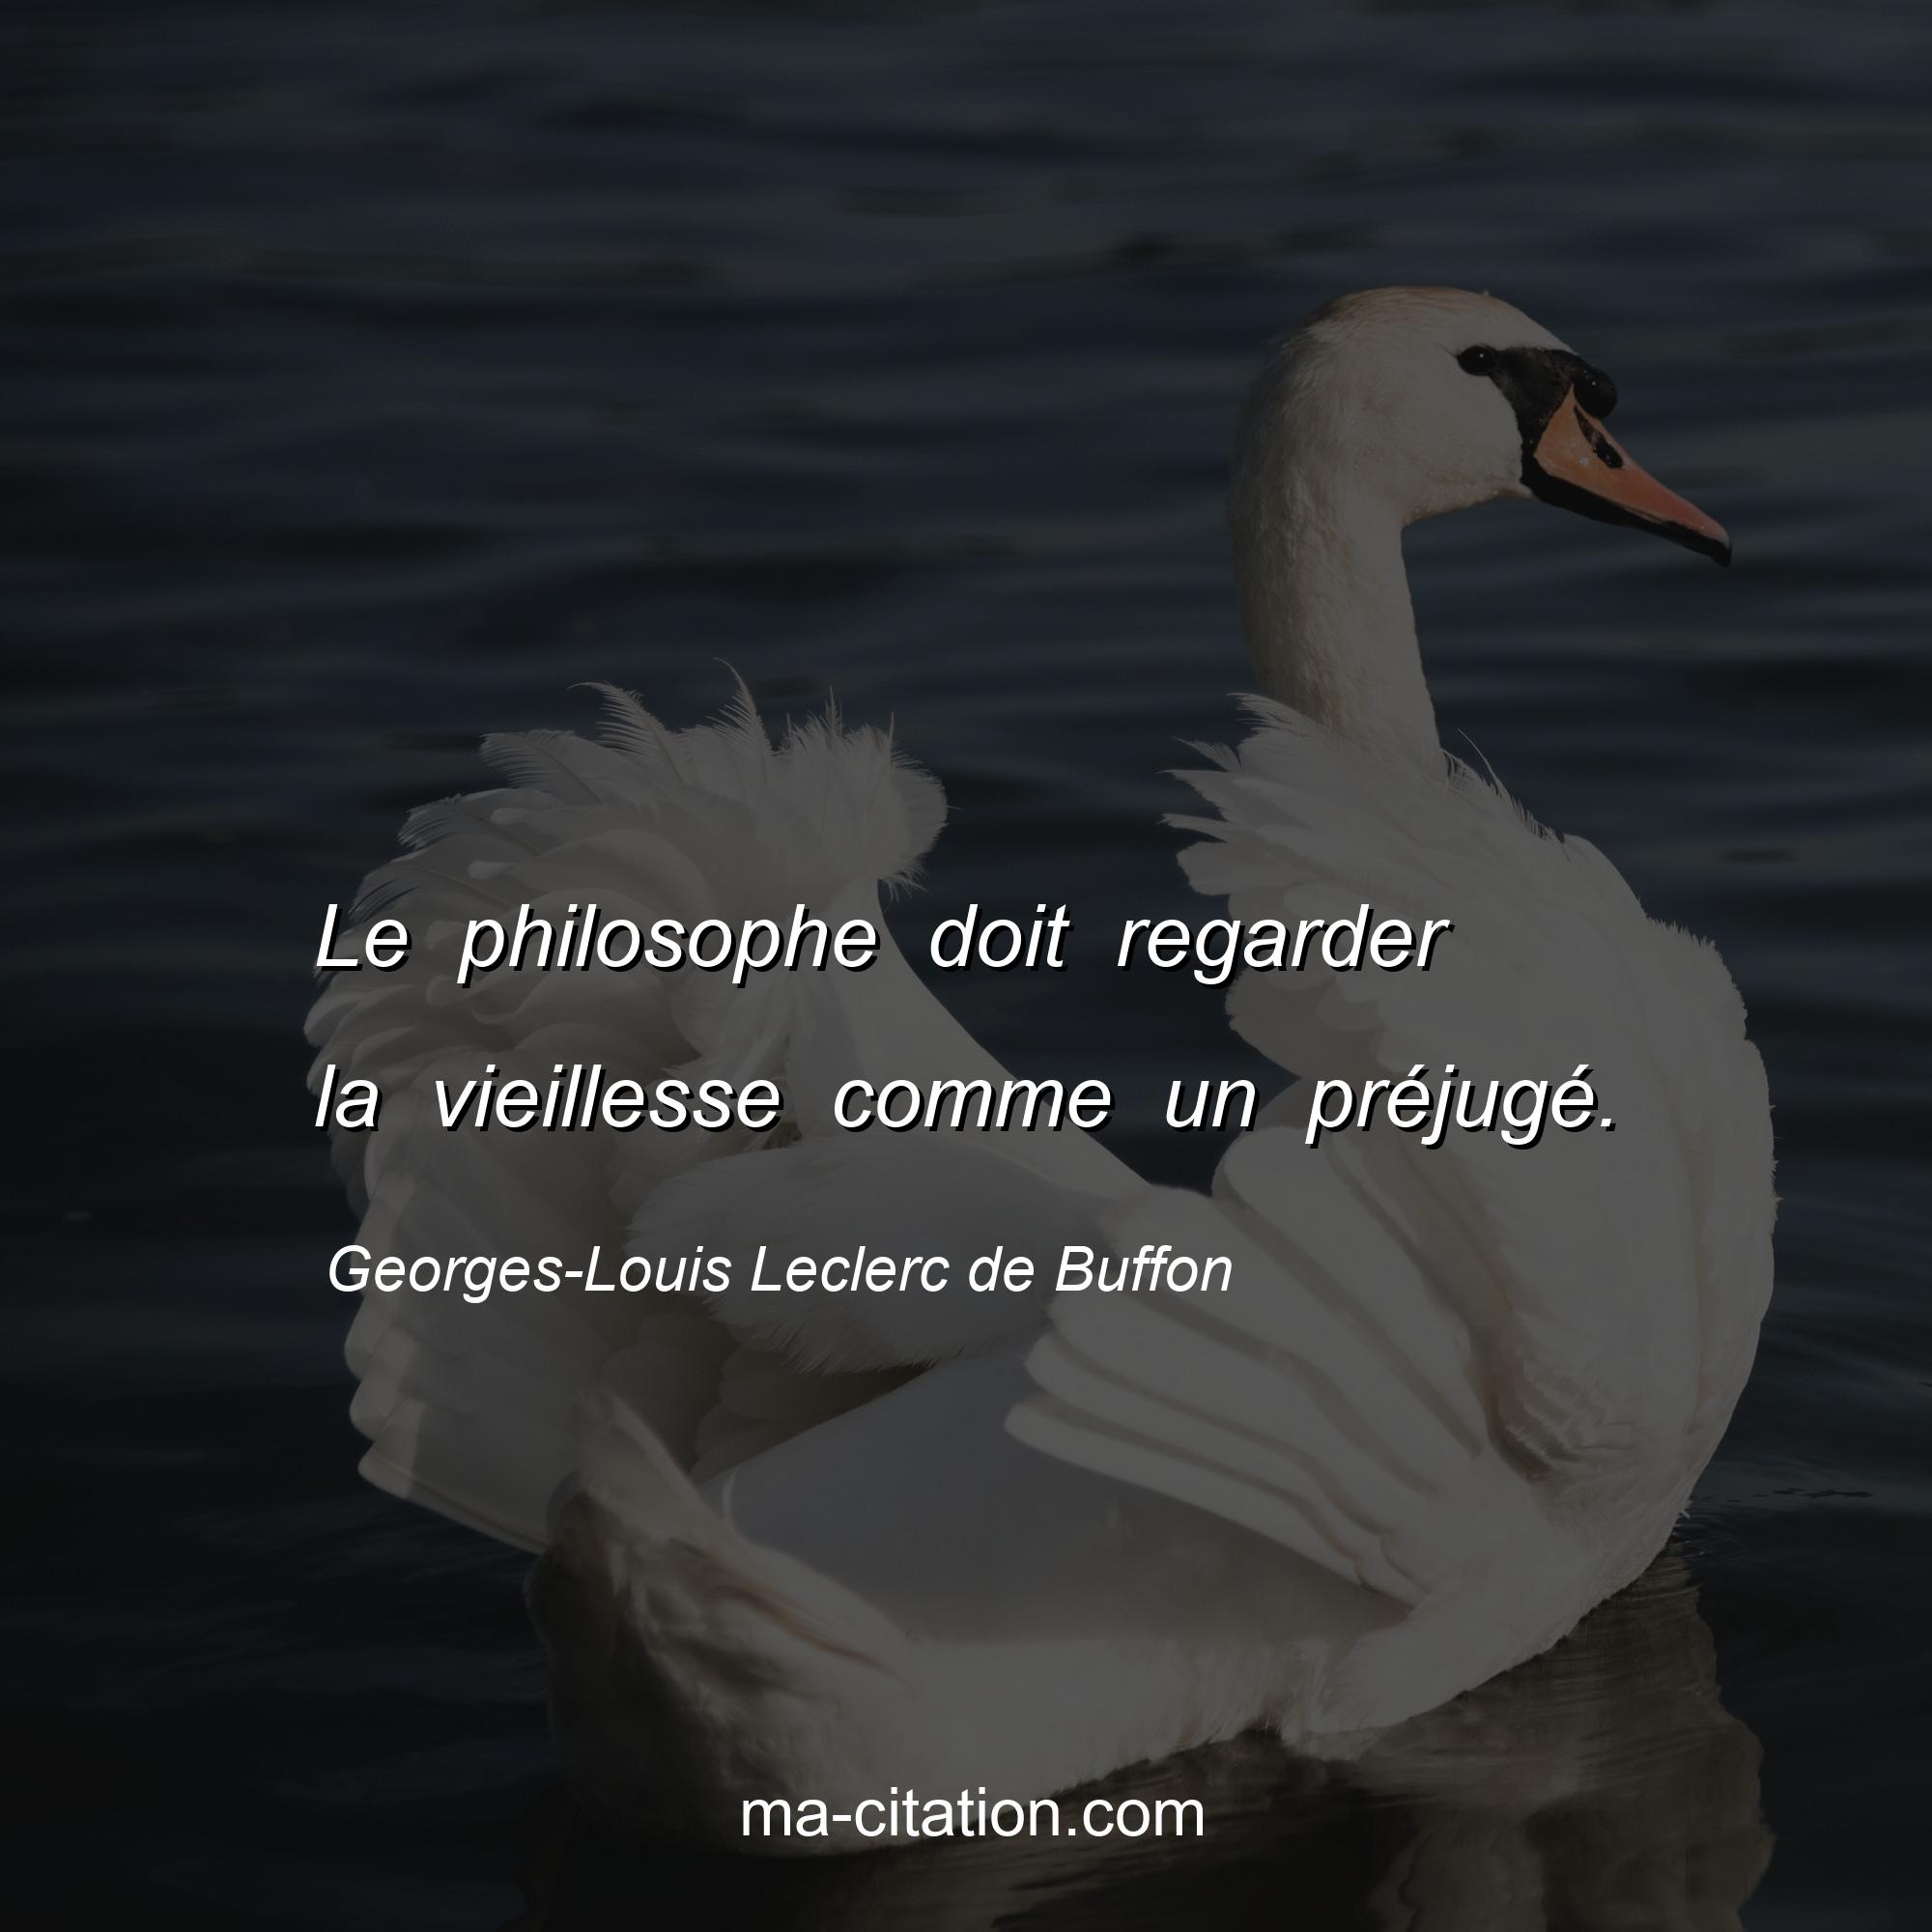 Georges-Louis Leclerc de Buffon : Le philosophe doit regarder la vieillesse comme un préjugé.